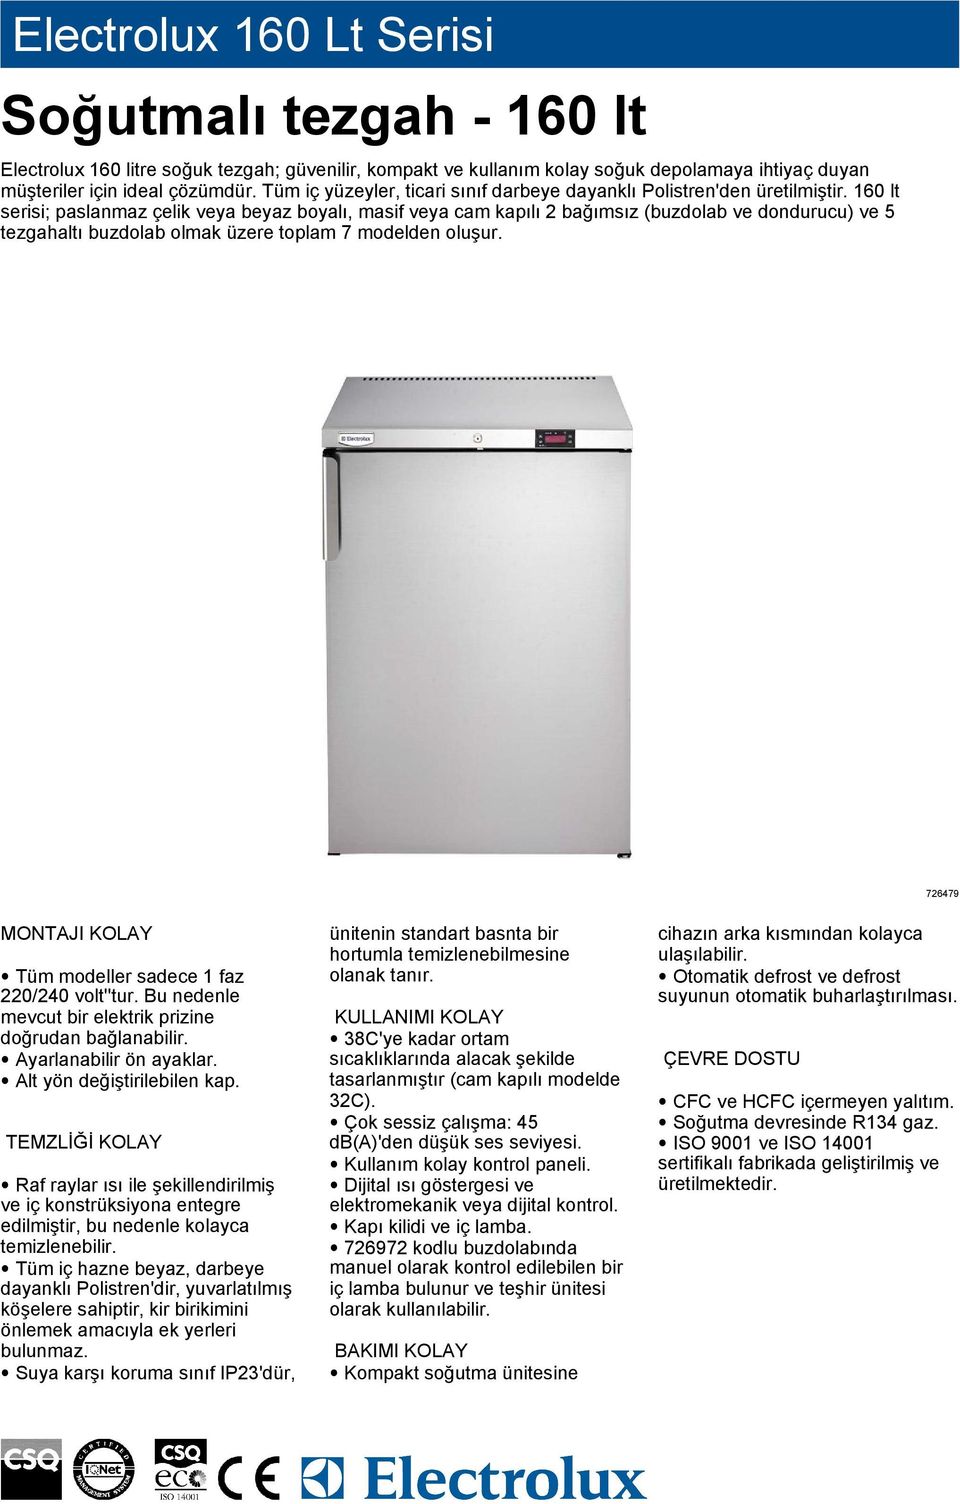 160 lt serisi; paslanmaz çelik veya beyaz boyalı, masif veya cam kapılı 2 bağımsız (buzdolab ve dondurucu) ve 5 tezgahaltı buzdolab olmak üzere toplam 7 modelden oluşur.